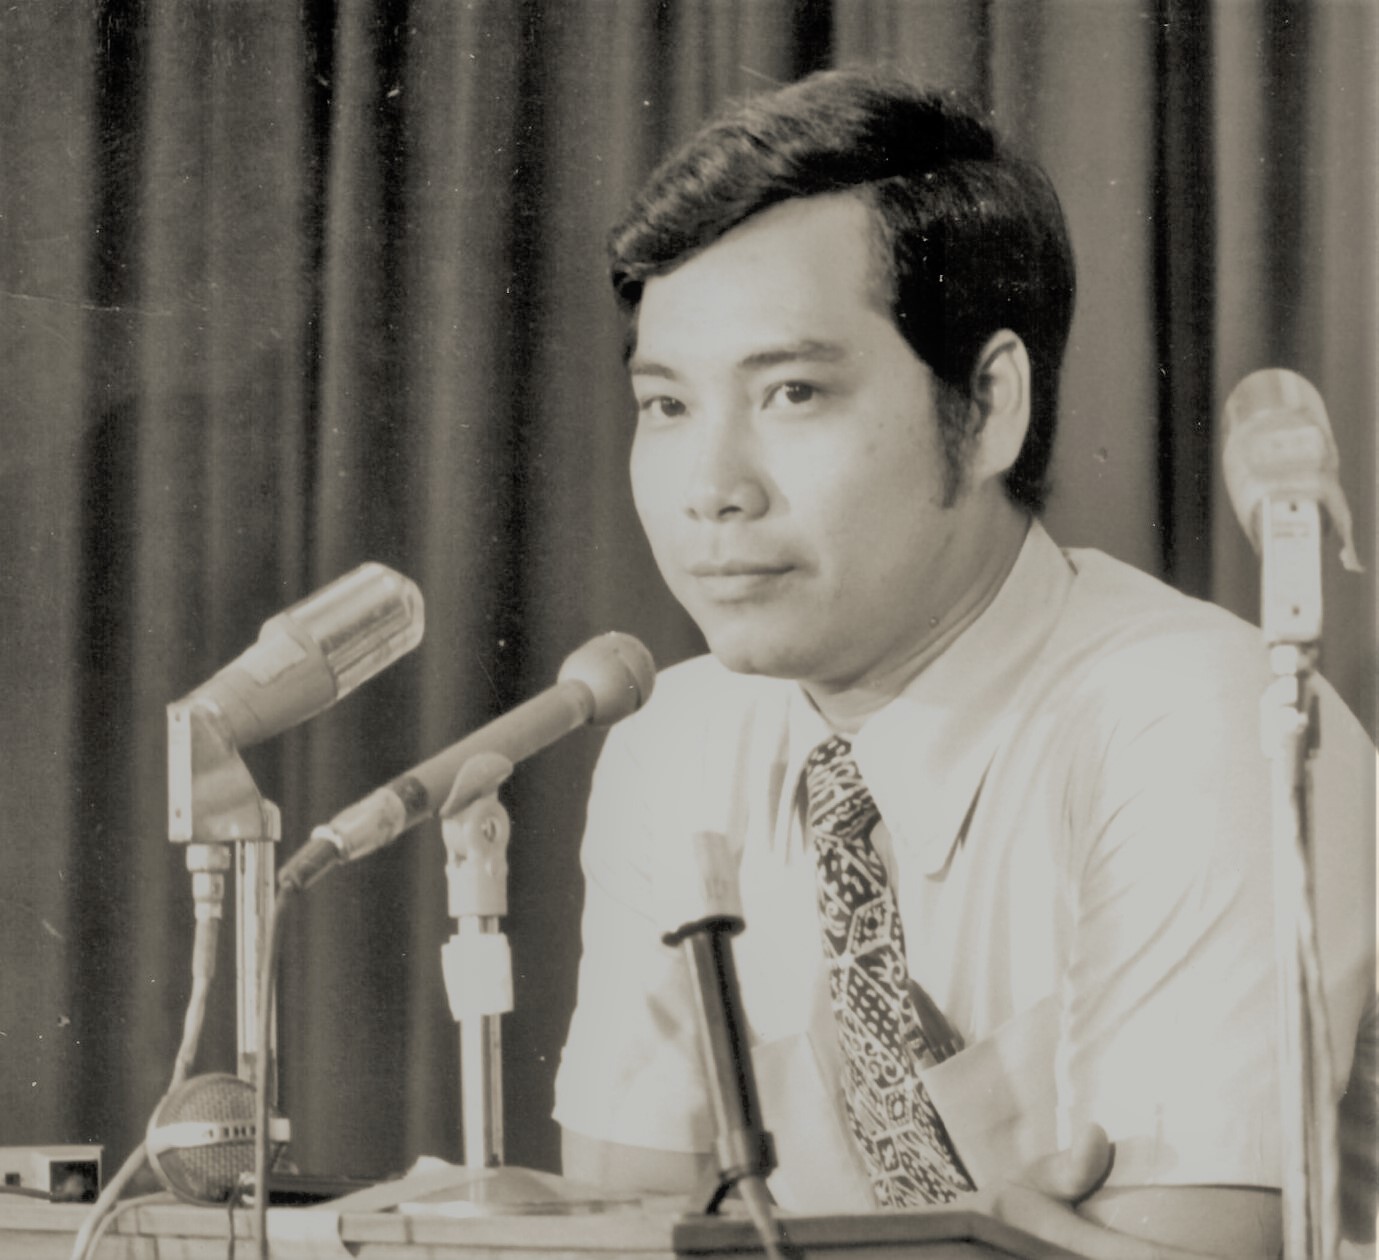 Le sénateur Thanh Hai Ngo répond à des questions au Centre de presse du Vietnam à Saigon au début des années 1970. Il était alors diplomate et attaché de presse pour le gouvernement sud-vietnamien. (Crédit photo : Bureau du sénateur Thanh Hai Ngo)